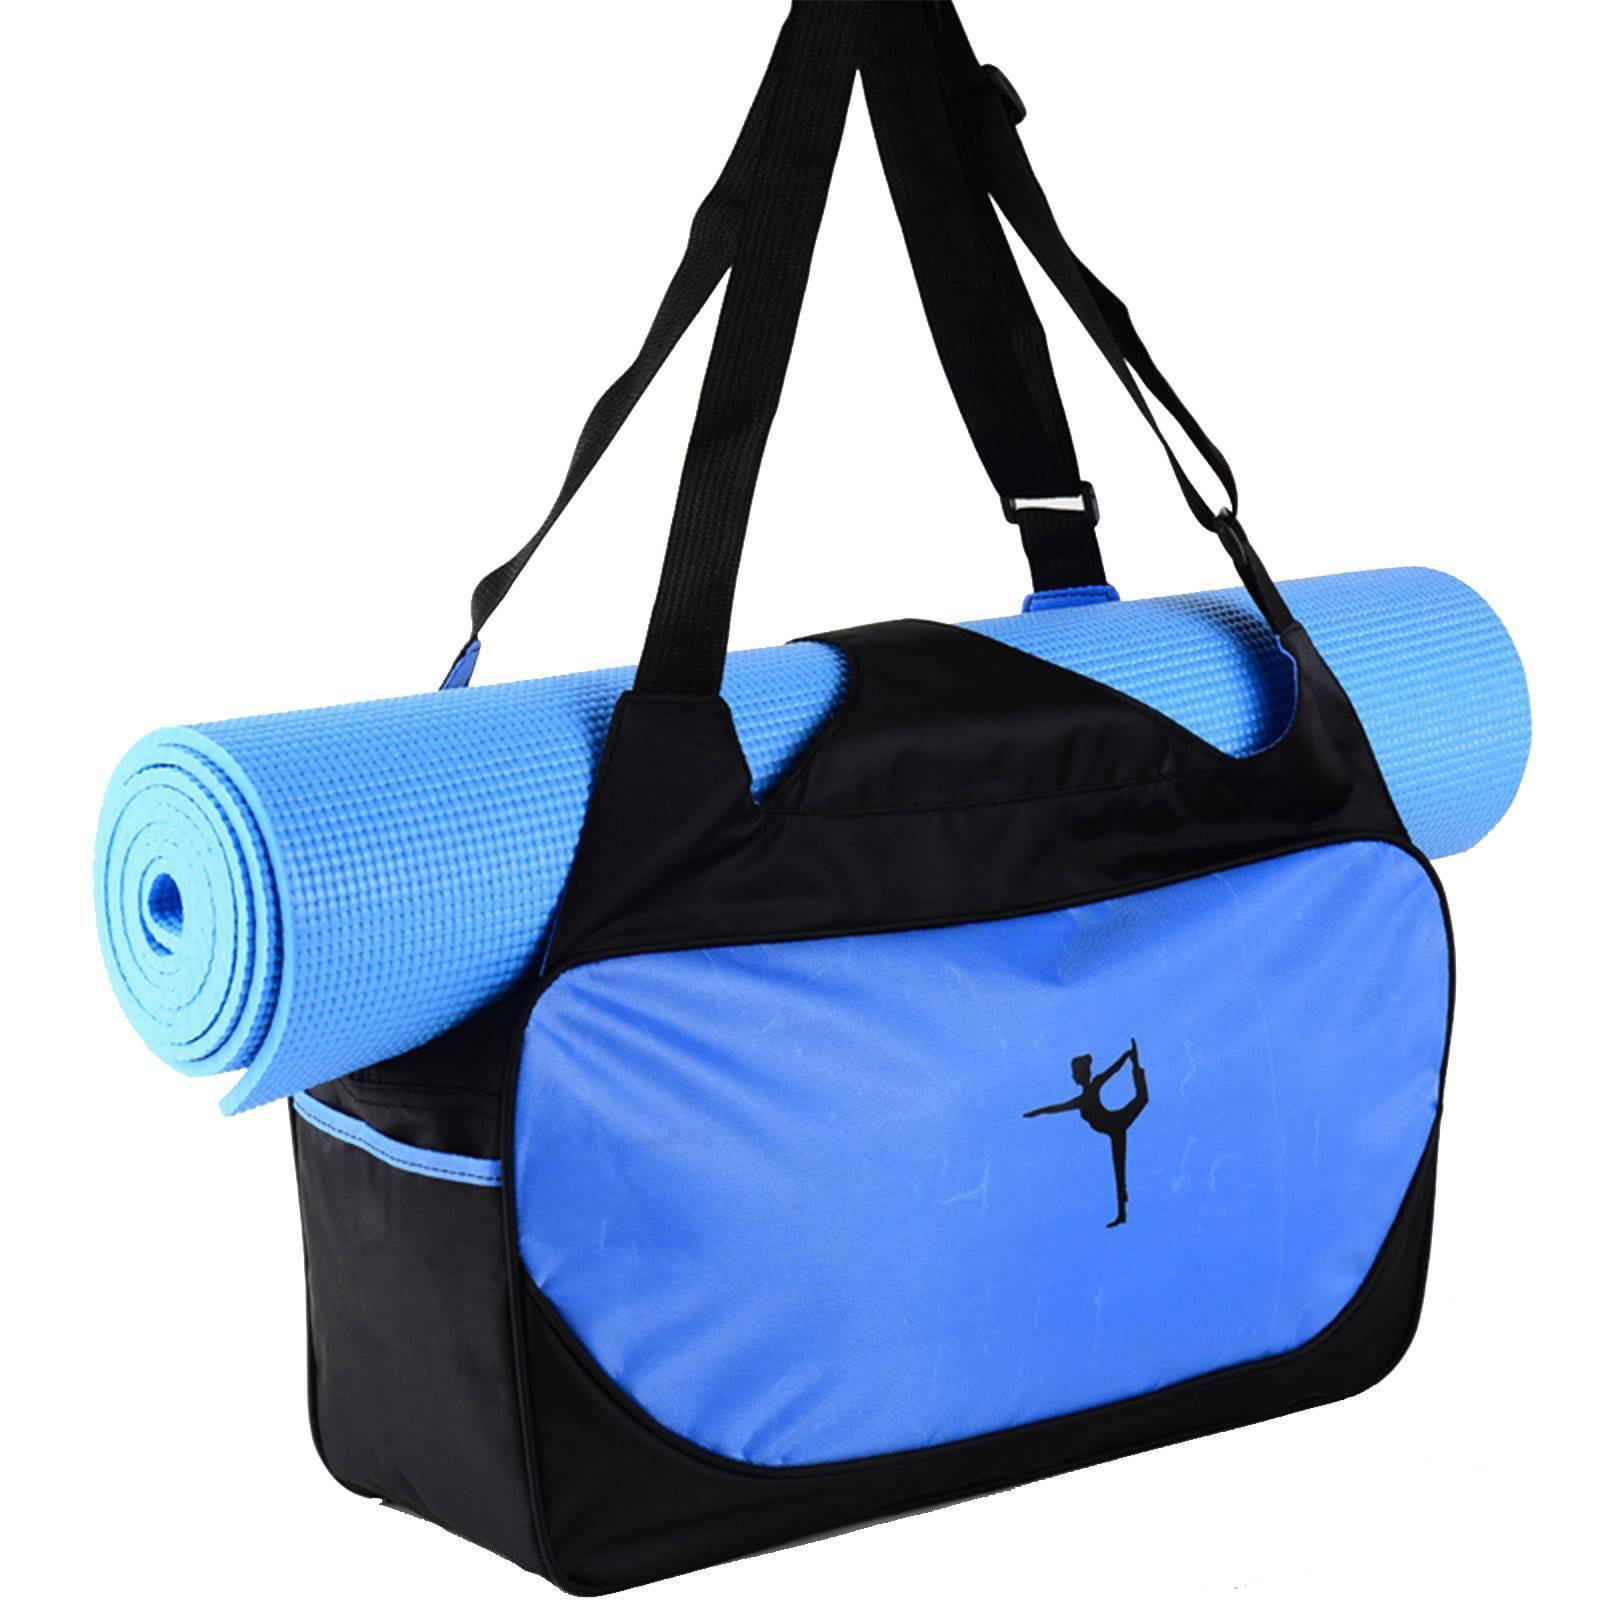 Sports Bag Leisure Bag Travel Bag Gym Fitness Bag Berry Red Sauna 